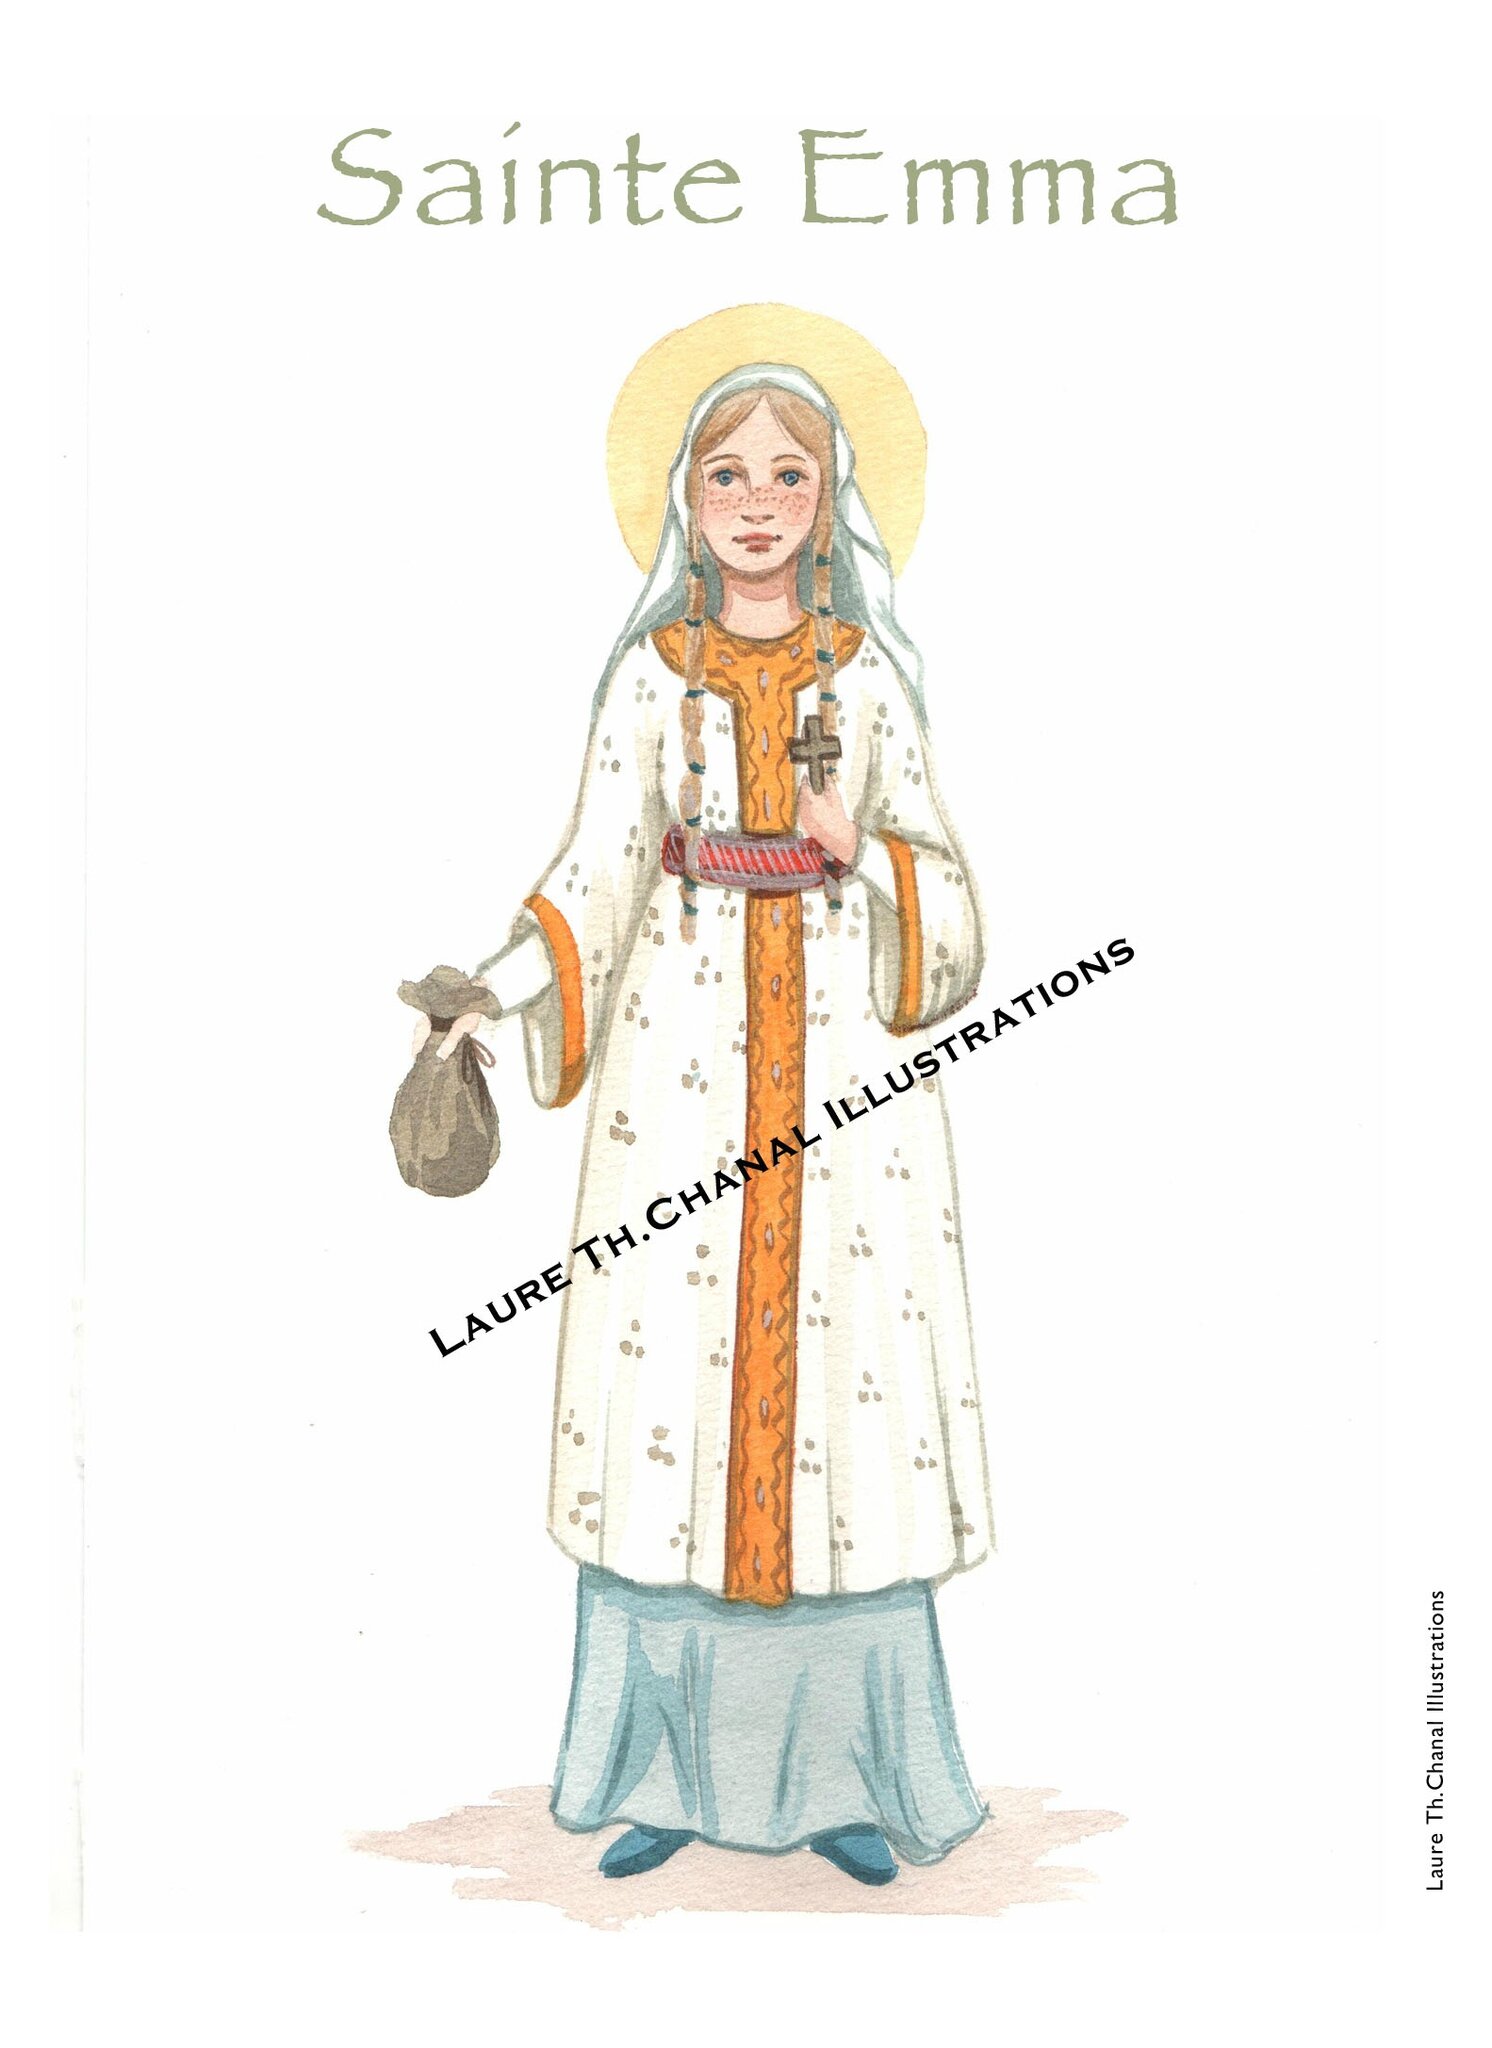 sainte Emma de Sangau